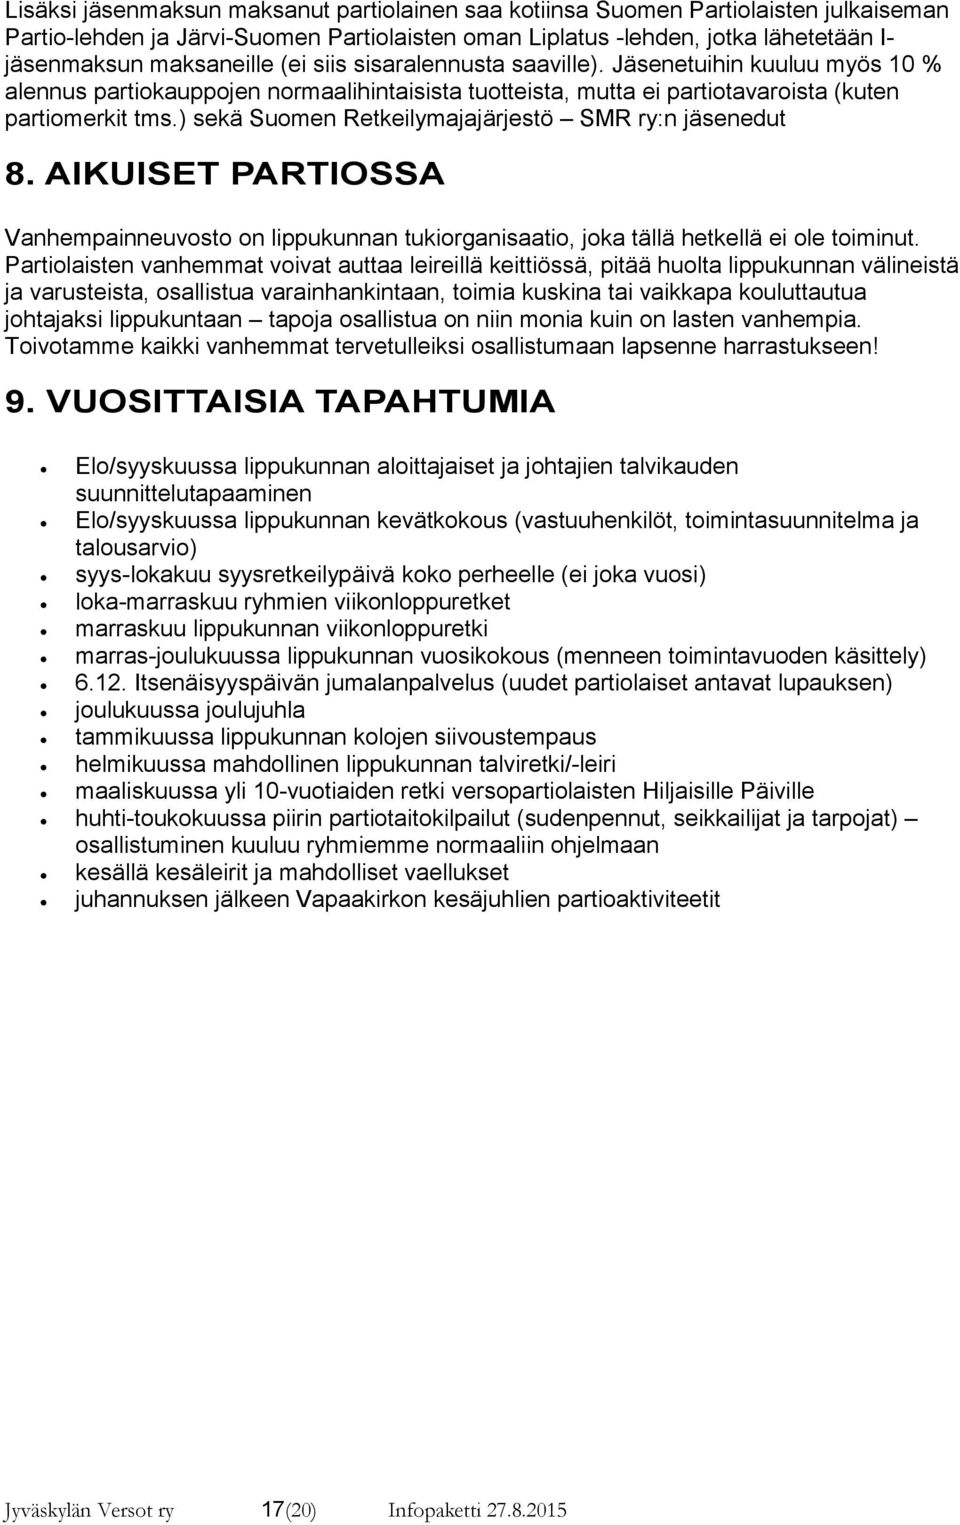 ) sekä Suomen Retkeilymajajärjestö SMR ry:n jäsenedut 8. AIKUISET PARTIOSSA Vanhempainneuvosto on lippukunnan tukiorganisaatio, joka tällä hetkellä ei ole toiminut.